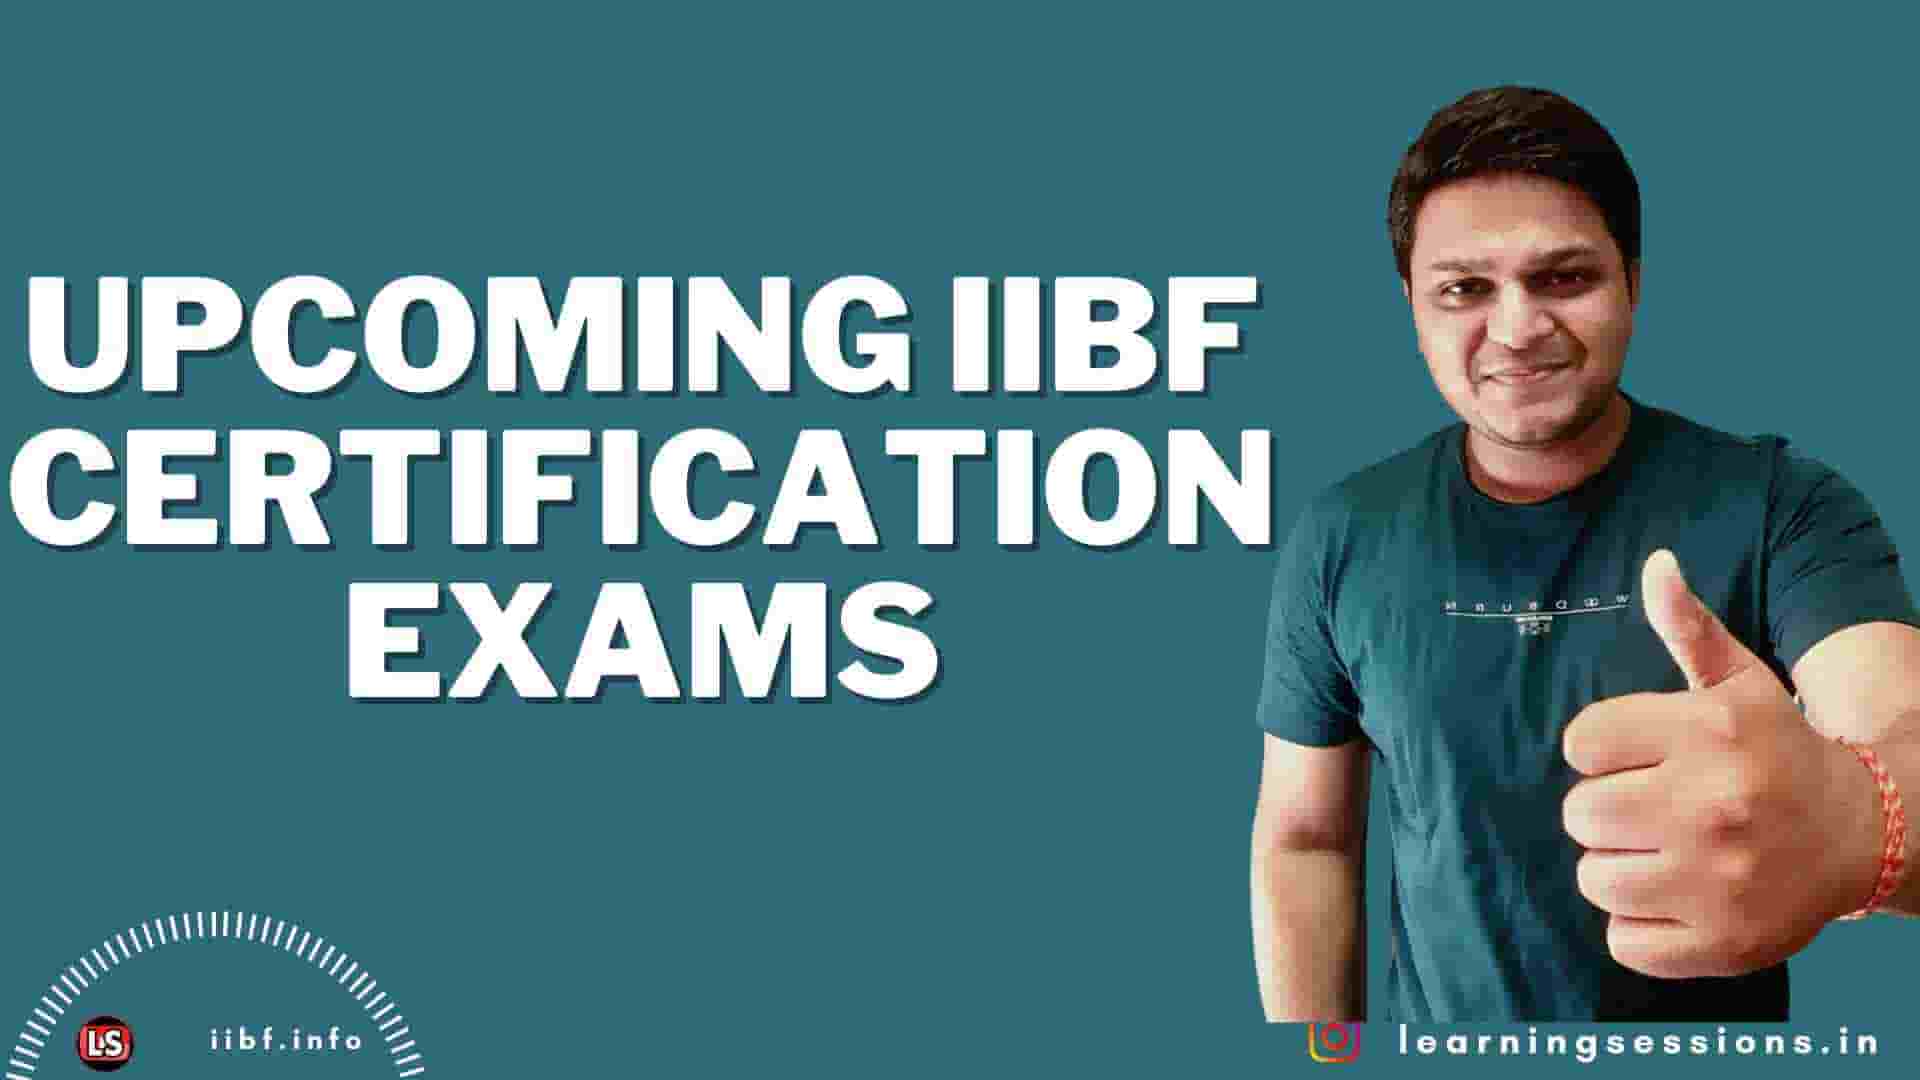 UPCOMING IIBF CERTIFICATION EXAMS 2022